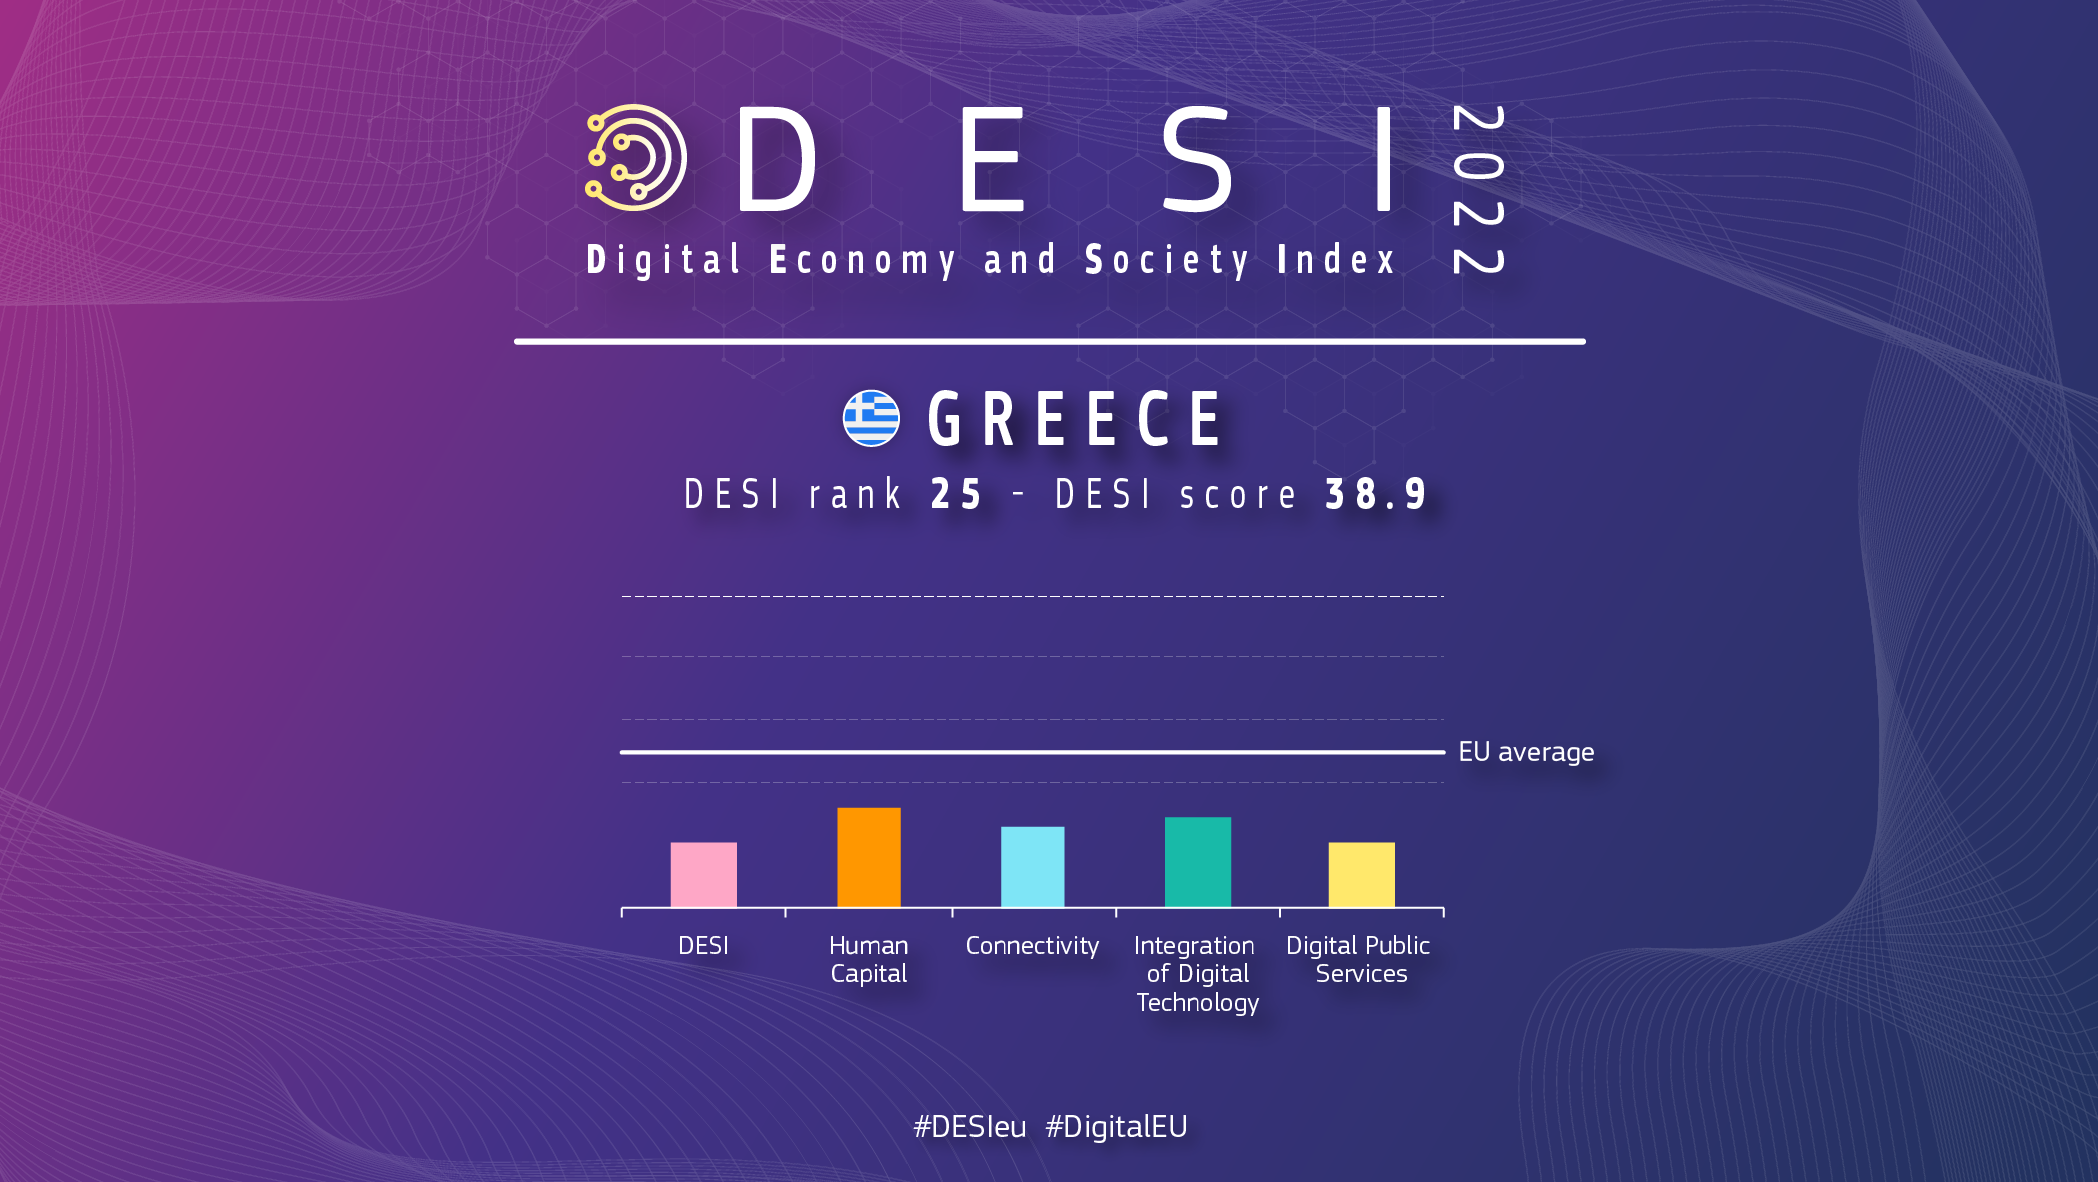 Grafisks pārskats par Grieķiju DESI, kurā vērtējums ir 25 un vērtējums 38,9